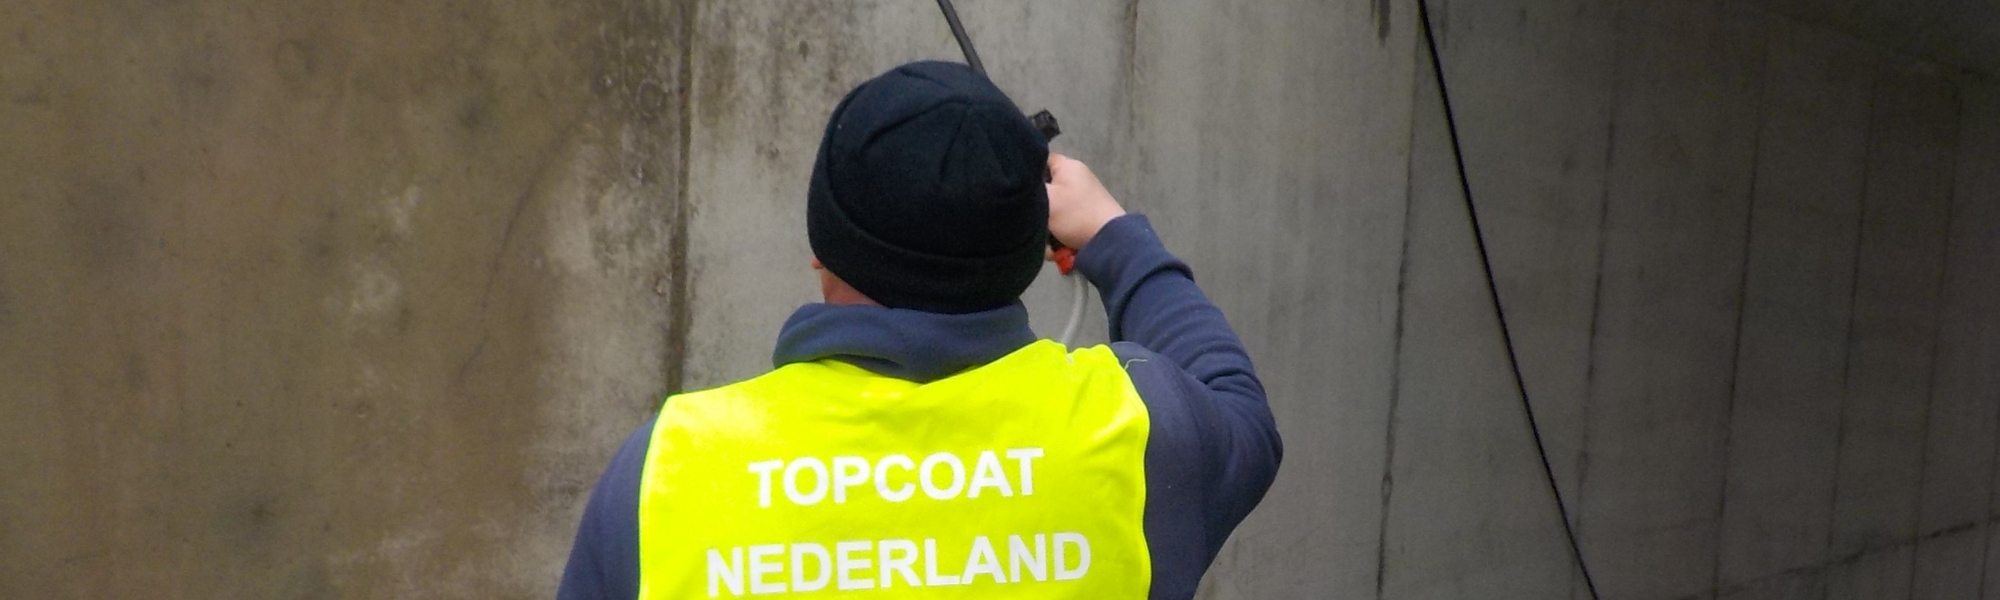 Hydrofoberen Topcoat Nederland